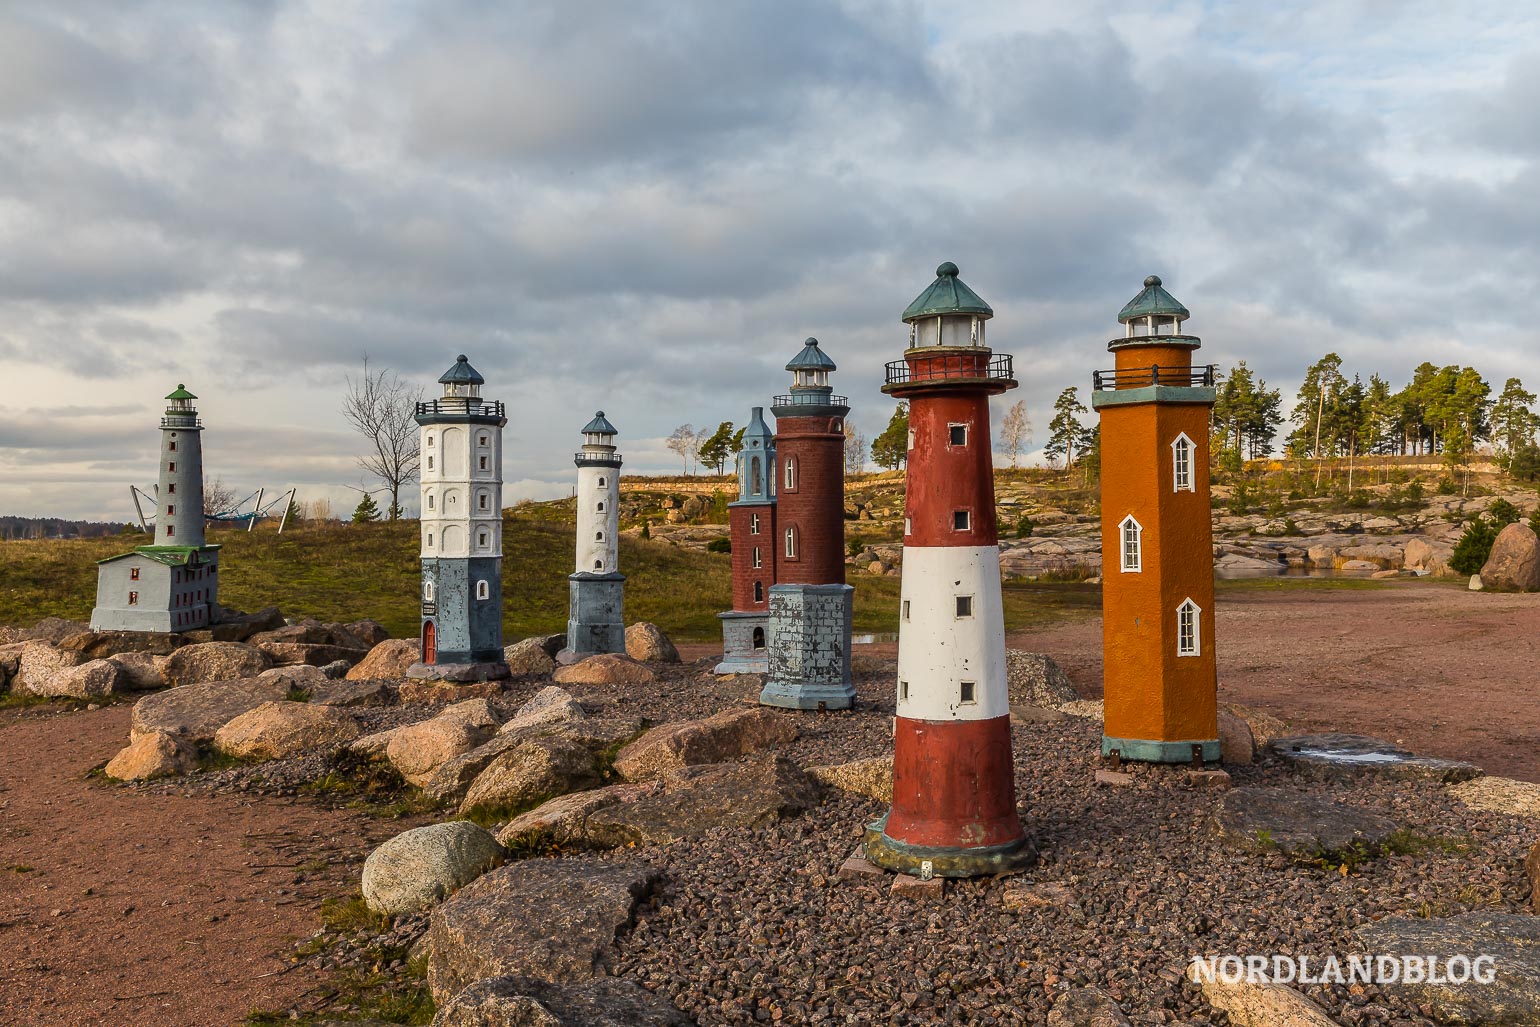 Miniaturen von den Leuchttürmen entlang der finnischen Ostseeküste im Katariina Seaside Park von Kotka